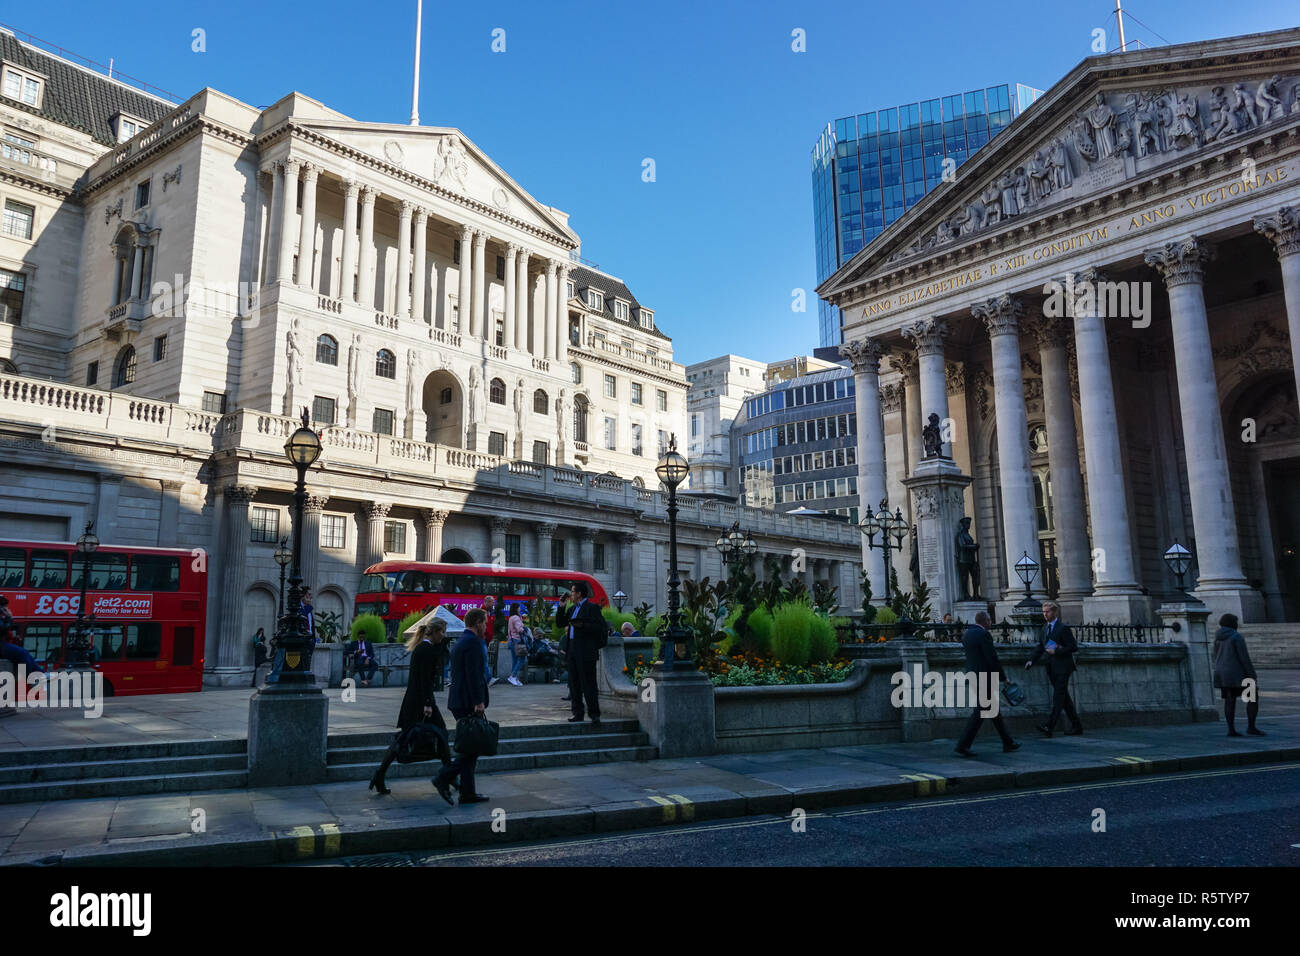 La Banque d'Angleterre et le Royal Exchange bâtiments dans Londres England Royaume-Uni UK Banque D'Images